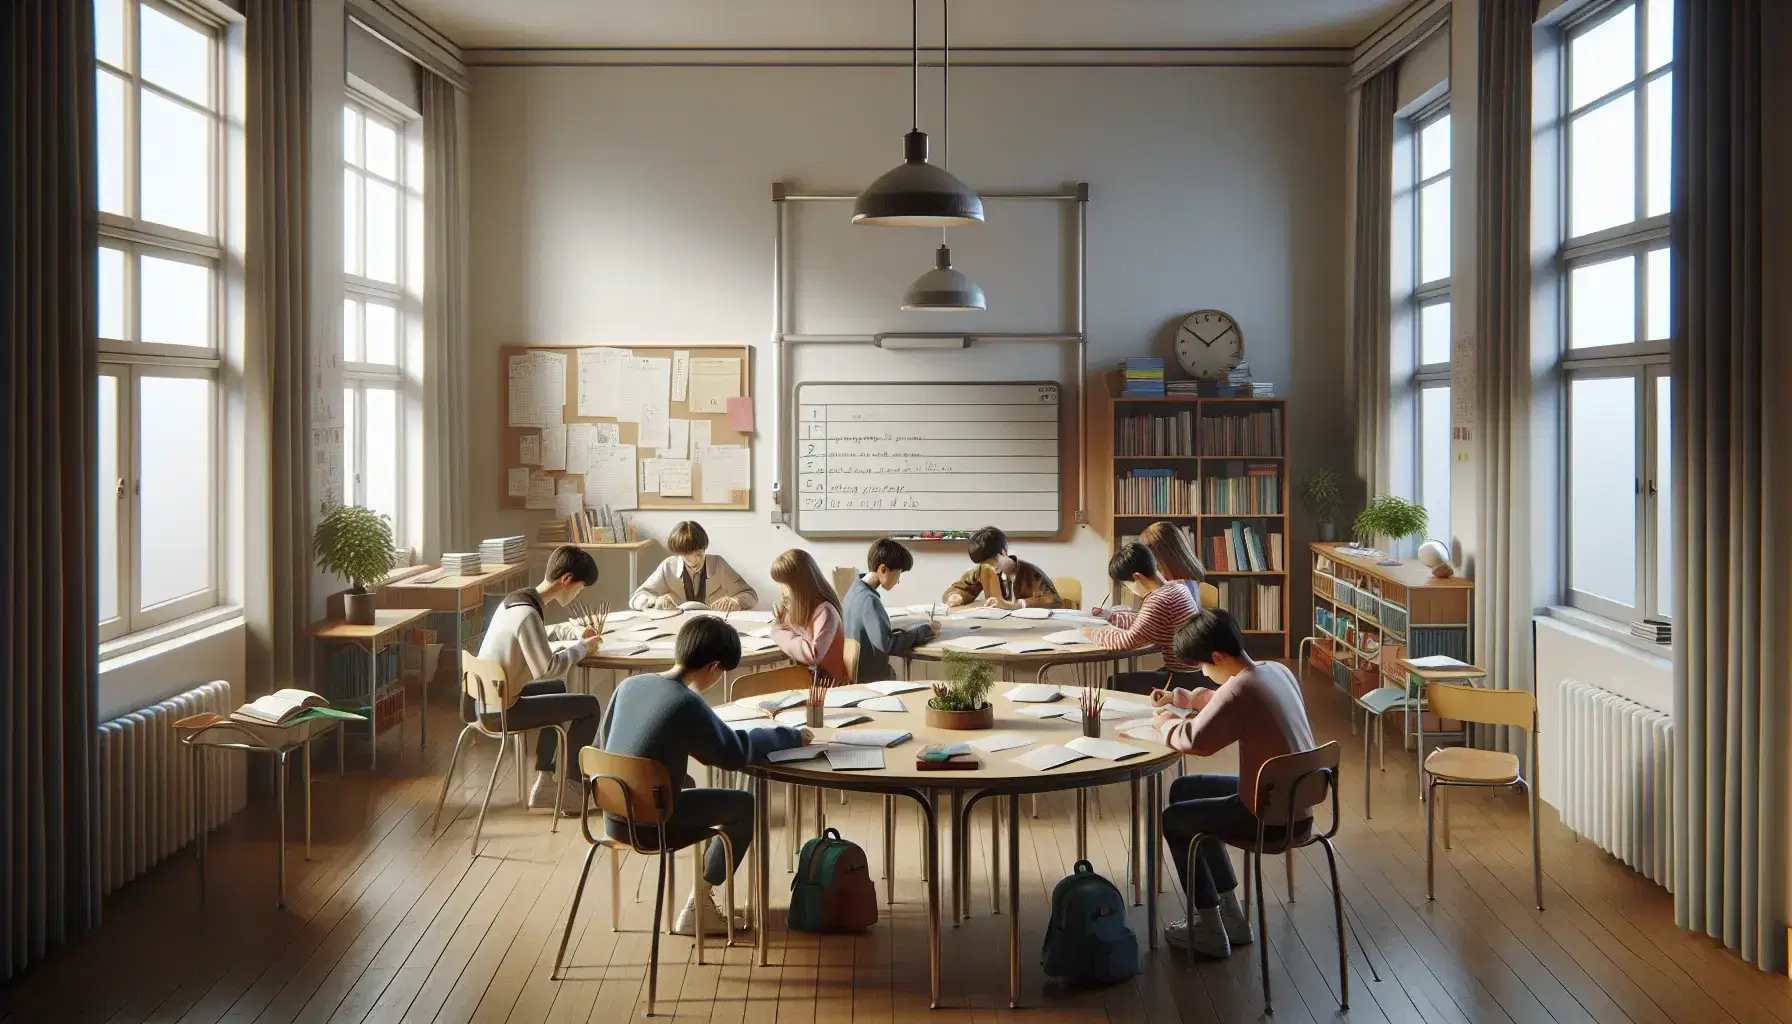 Aula escolar con estudiantes de diversas edades trabajando en equipo alrededor de una mesa redonda, con papeles y lápices, junto a una pizarra blanca y estantería con libros.